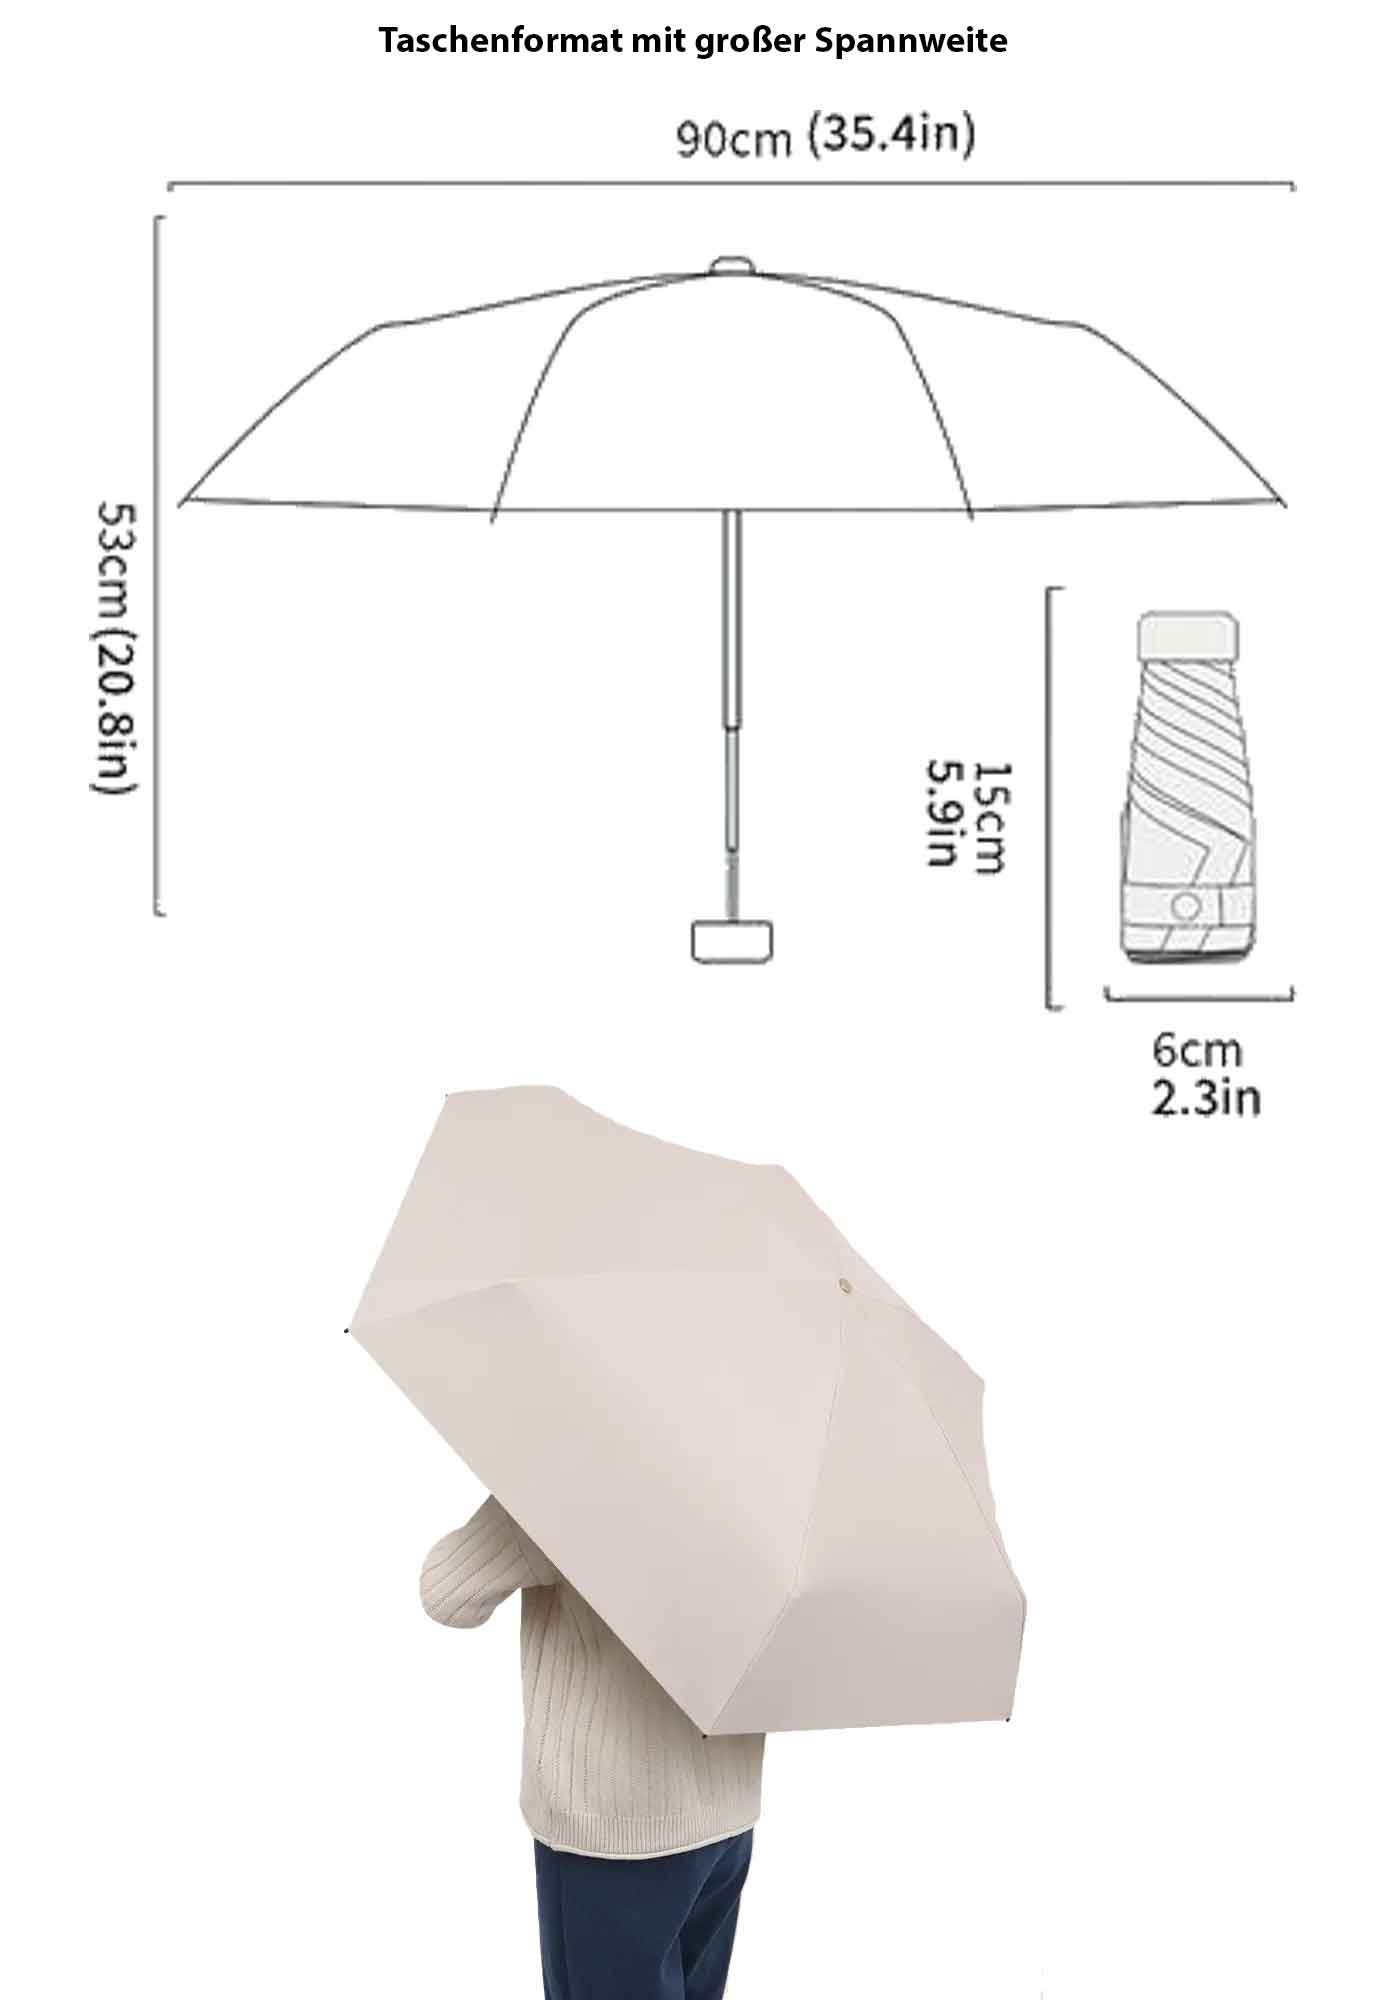 Features des Voyage Vibe Mini Taschen-Regenschirm. Immer griffbereit: Dank seiner kompakten Größe (6 cm x 15 cm) passt der Schirm in jede Handtasche und ist somit immer dabei, wenn Sie ihn brauchen. Zuverlässiger Schutz: Die große Spannweite (90 cm x 53 cm) bietet Ihnen kompletten Schutz vor Regen und Wind.